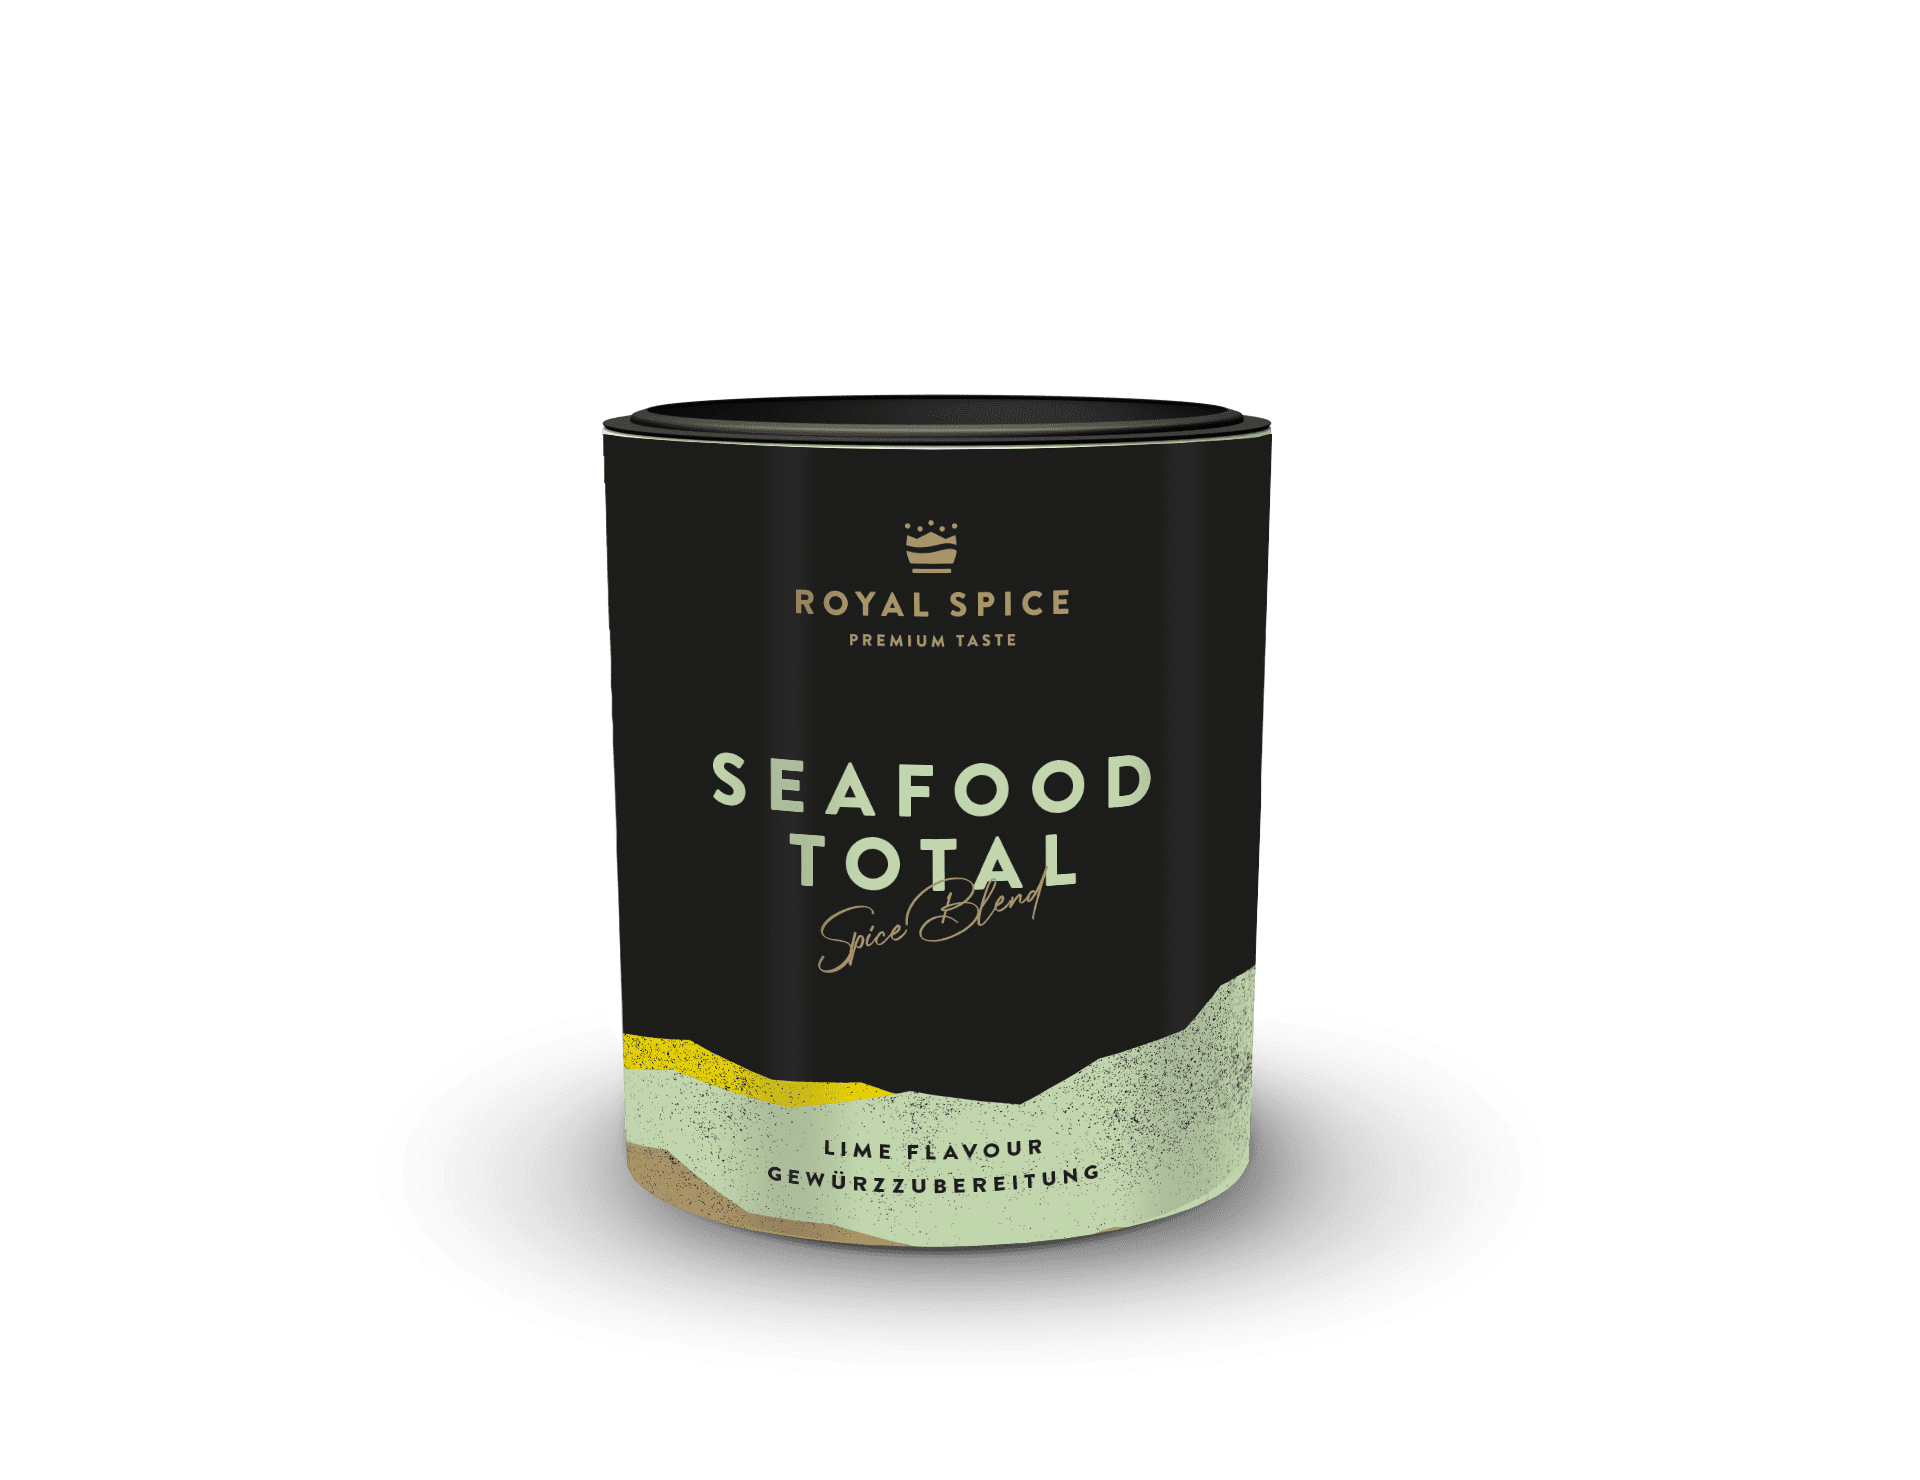 Seafood Total, Meeresfrüchte und Scampi Gewürz